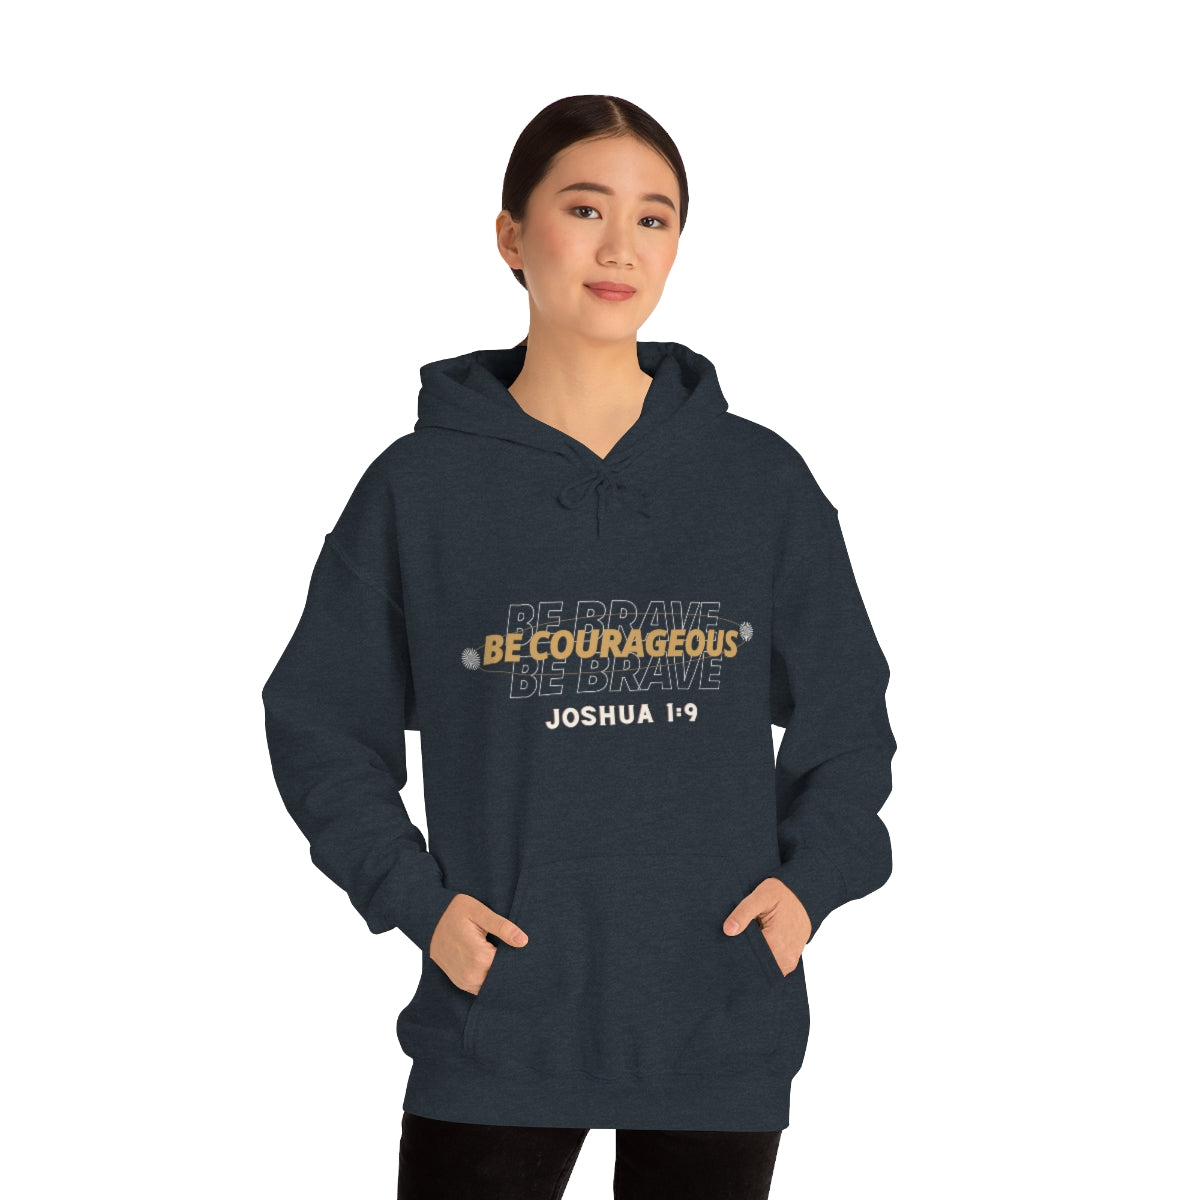 Courageous Hooded Sweatshirt